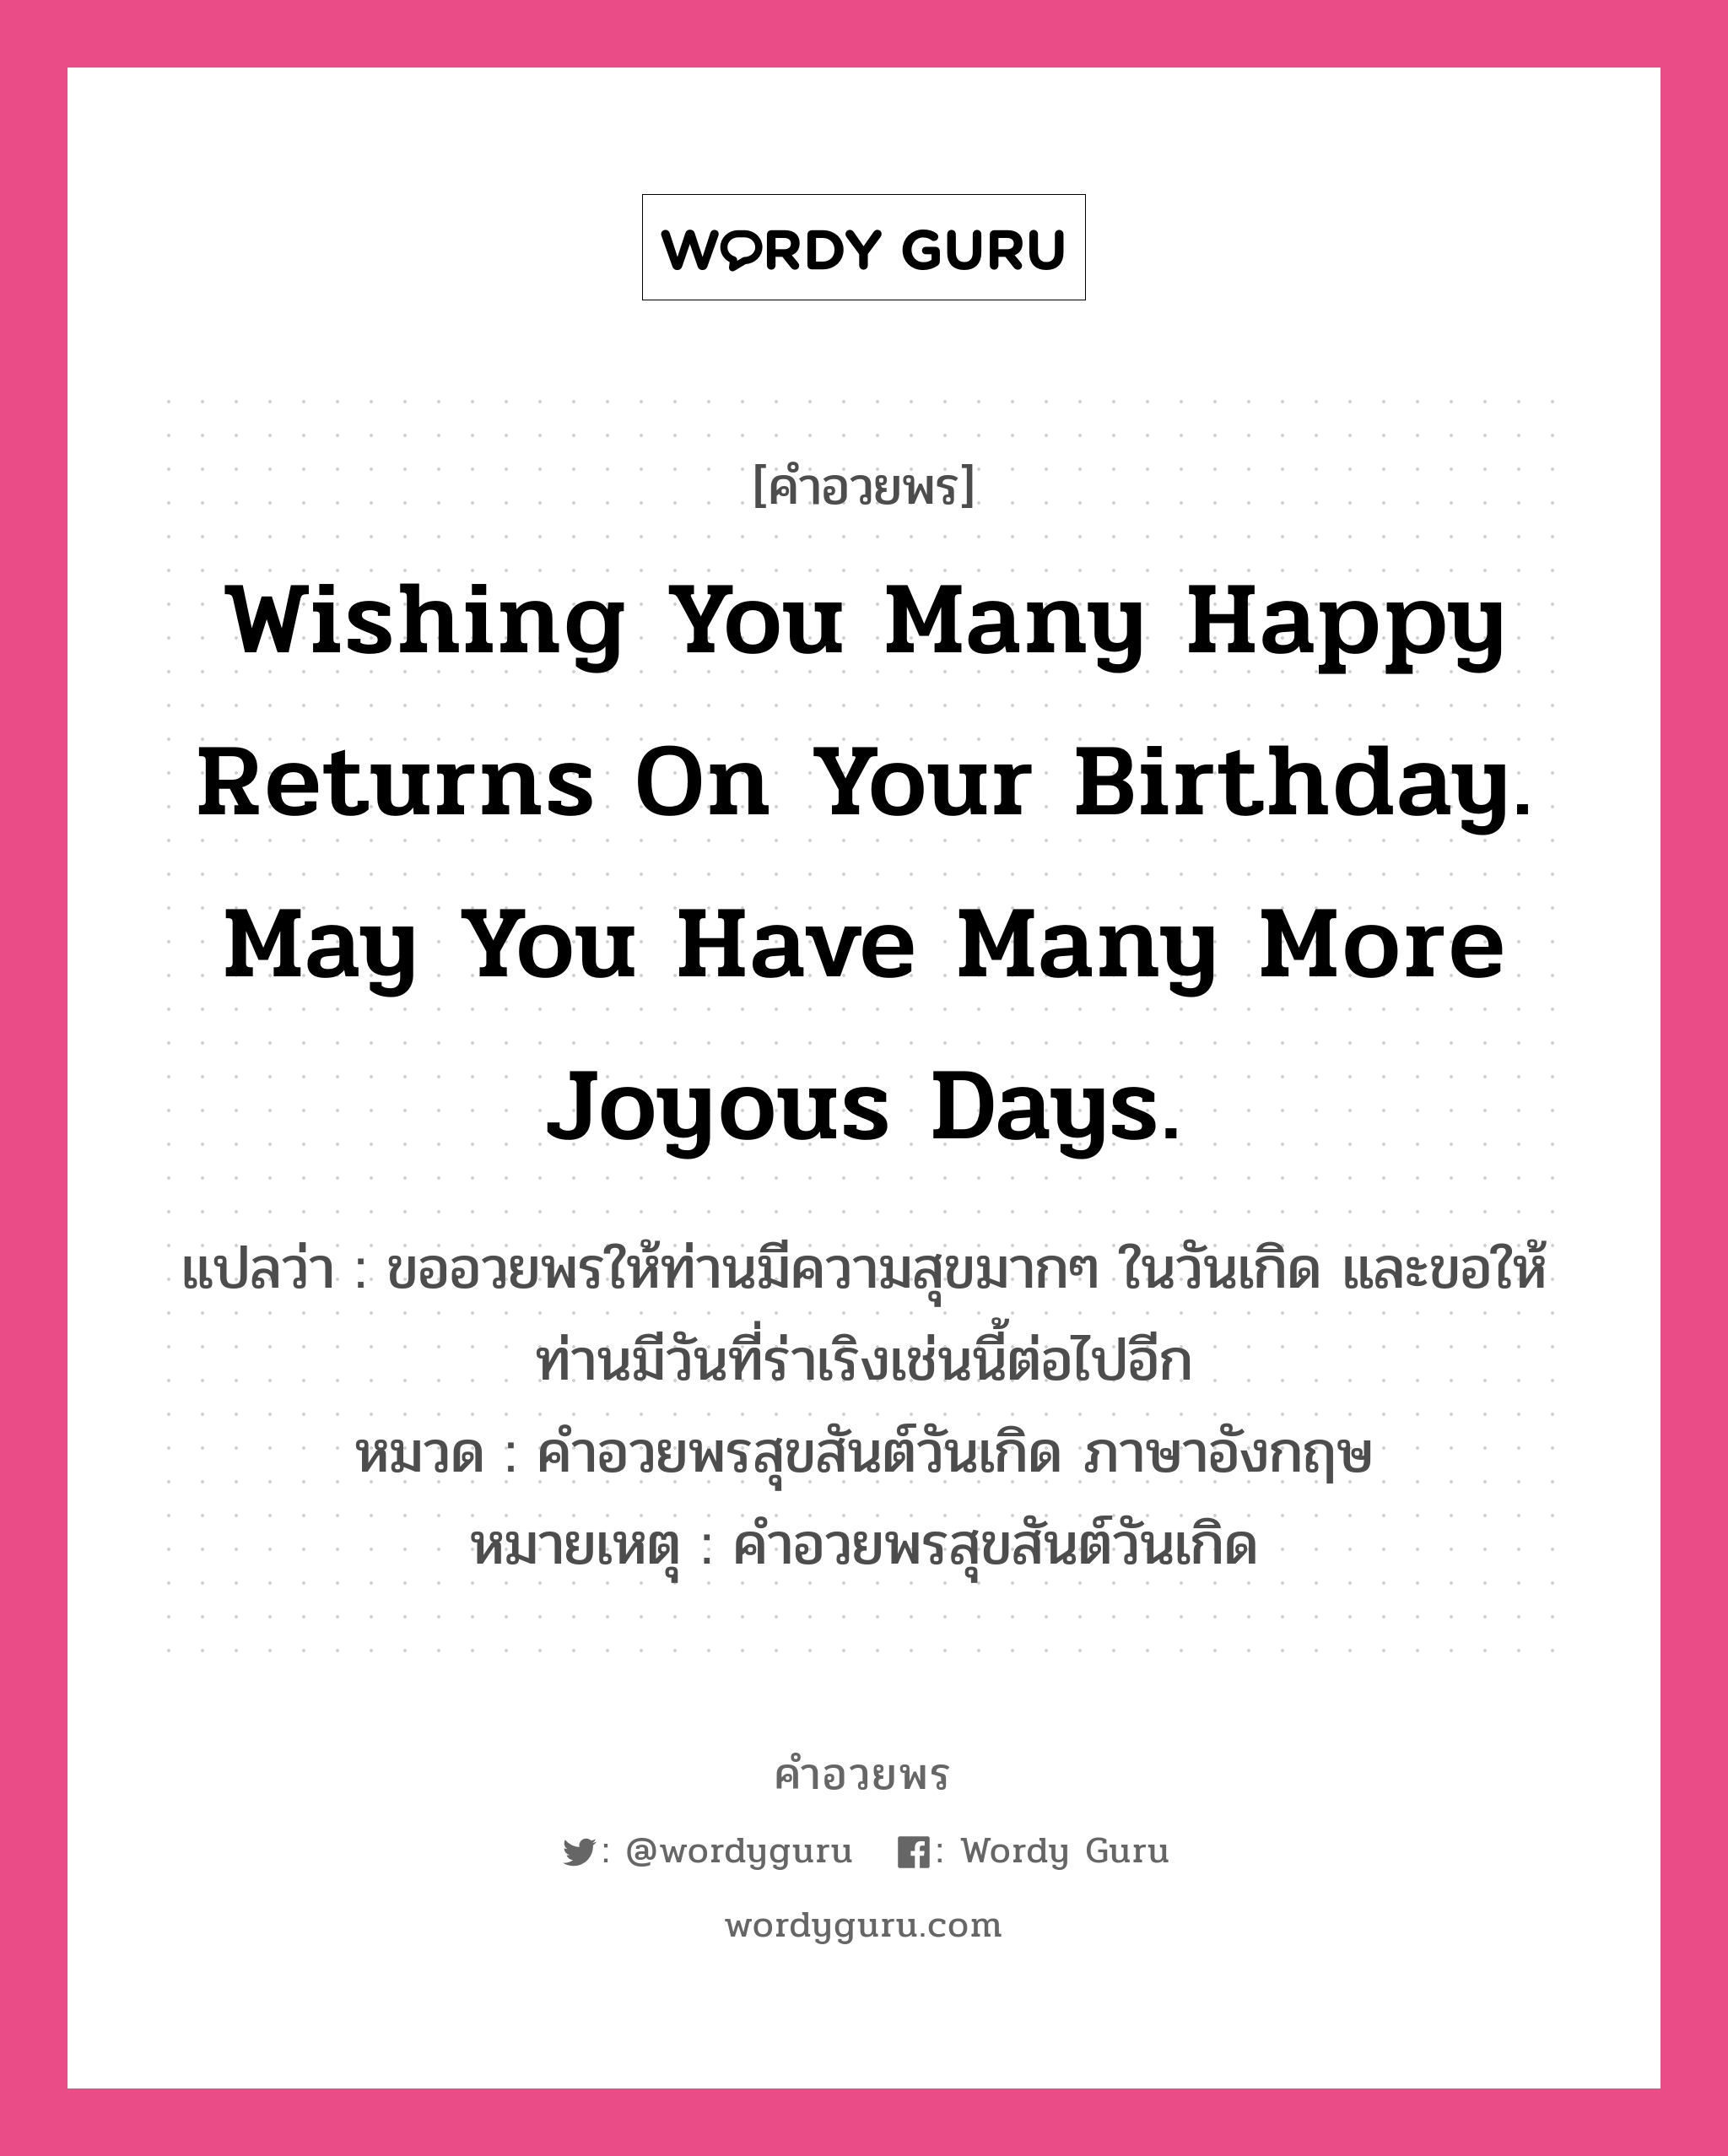 คำอวยพร Wishing you many happy returns on your birthday. May you have many more joyous days. คืออะไร?, แปลว่า ขออวยพรให้ท่านมีความสุขมากๆ ในวันเกิด และขอให้ท่านมีวันที่ร่าเริงเช่นนี้ต่อไปอีก หมวด คำอวยพรสุขสันต์วันเกิด ภาษาอังกฤษ หมายเหตุ คำอวยพรสุขสันต์วันเกิด หมวด คำอวยพรสุขสันต์วันเกิด ภาษาอังกฤษ